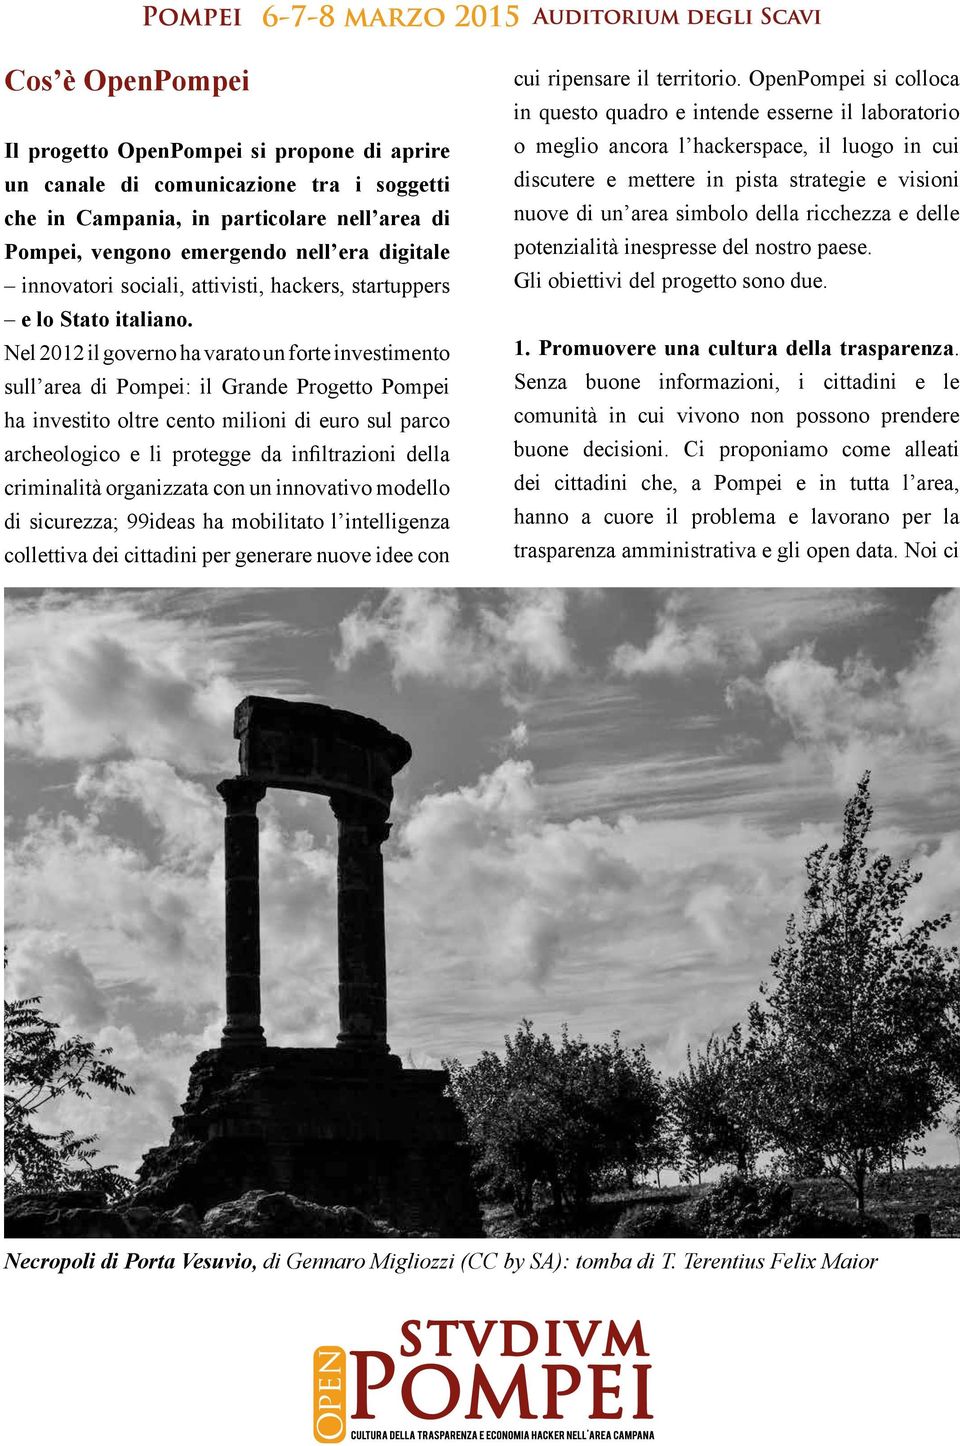 Nel 2012 il governo ha varato un forte investimento sull area di Pompei: il Grande Progetto Pompei ha investito oltre cento milioni di euro sul parco archeologico e li protegge da infiltrazioni della